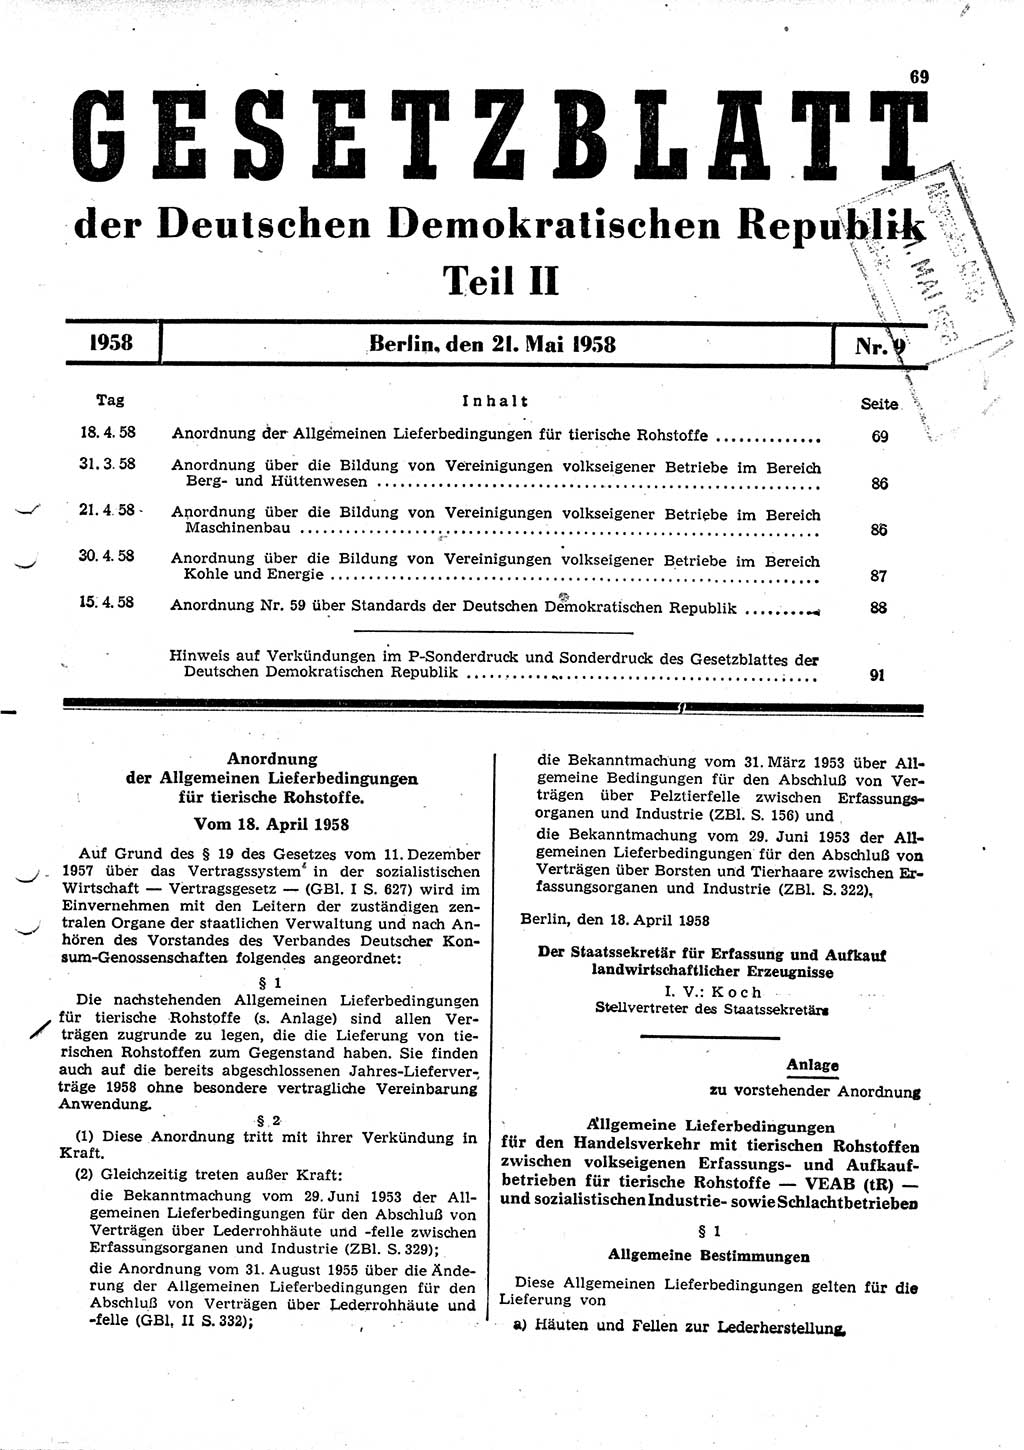 Gesetzblatt (GBl.) der Deutschen Demokratischen Republik (DDR) Teil ⅠⅠ 1958, Seite 69 (GBl. DDR ⅠⅠ 1958, S. 69)